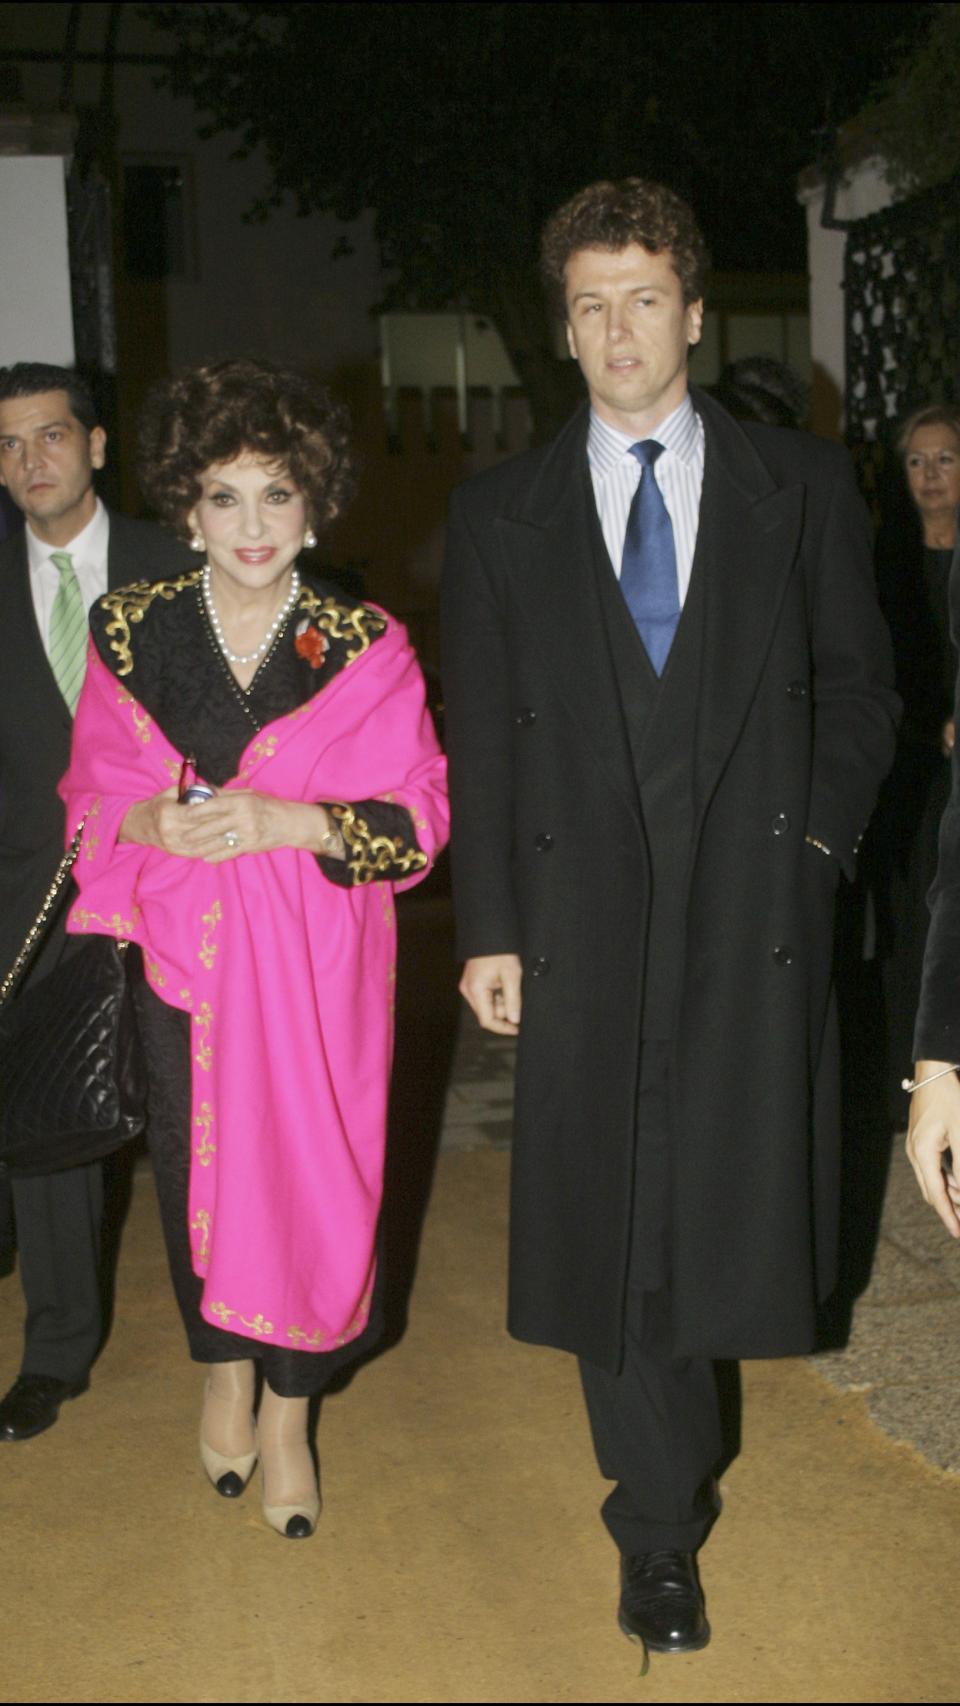 Gina junto a Rigau en una imagen tomada en 2005.